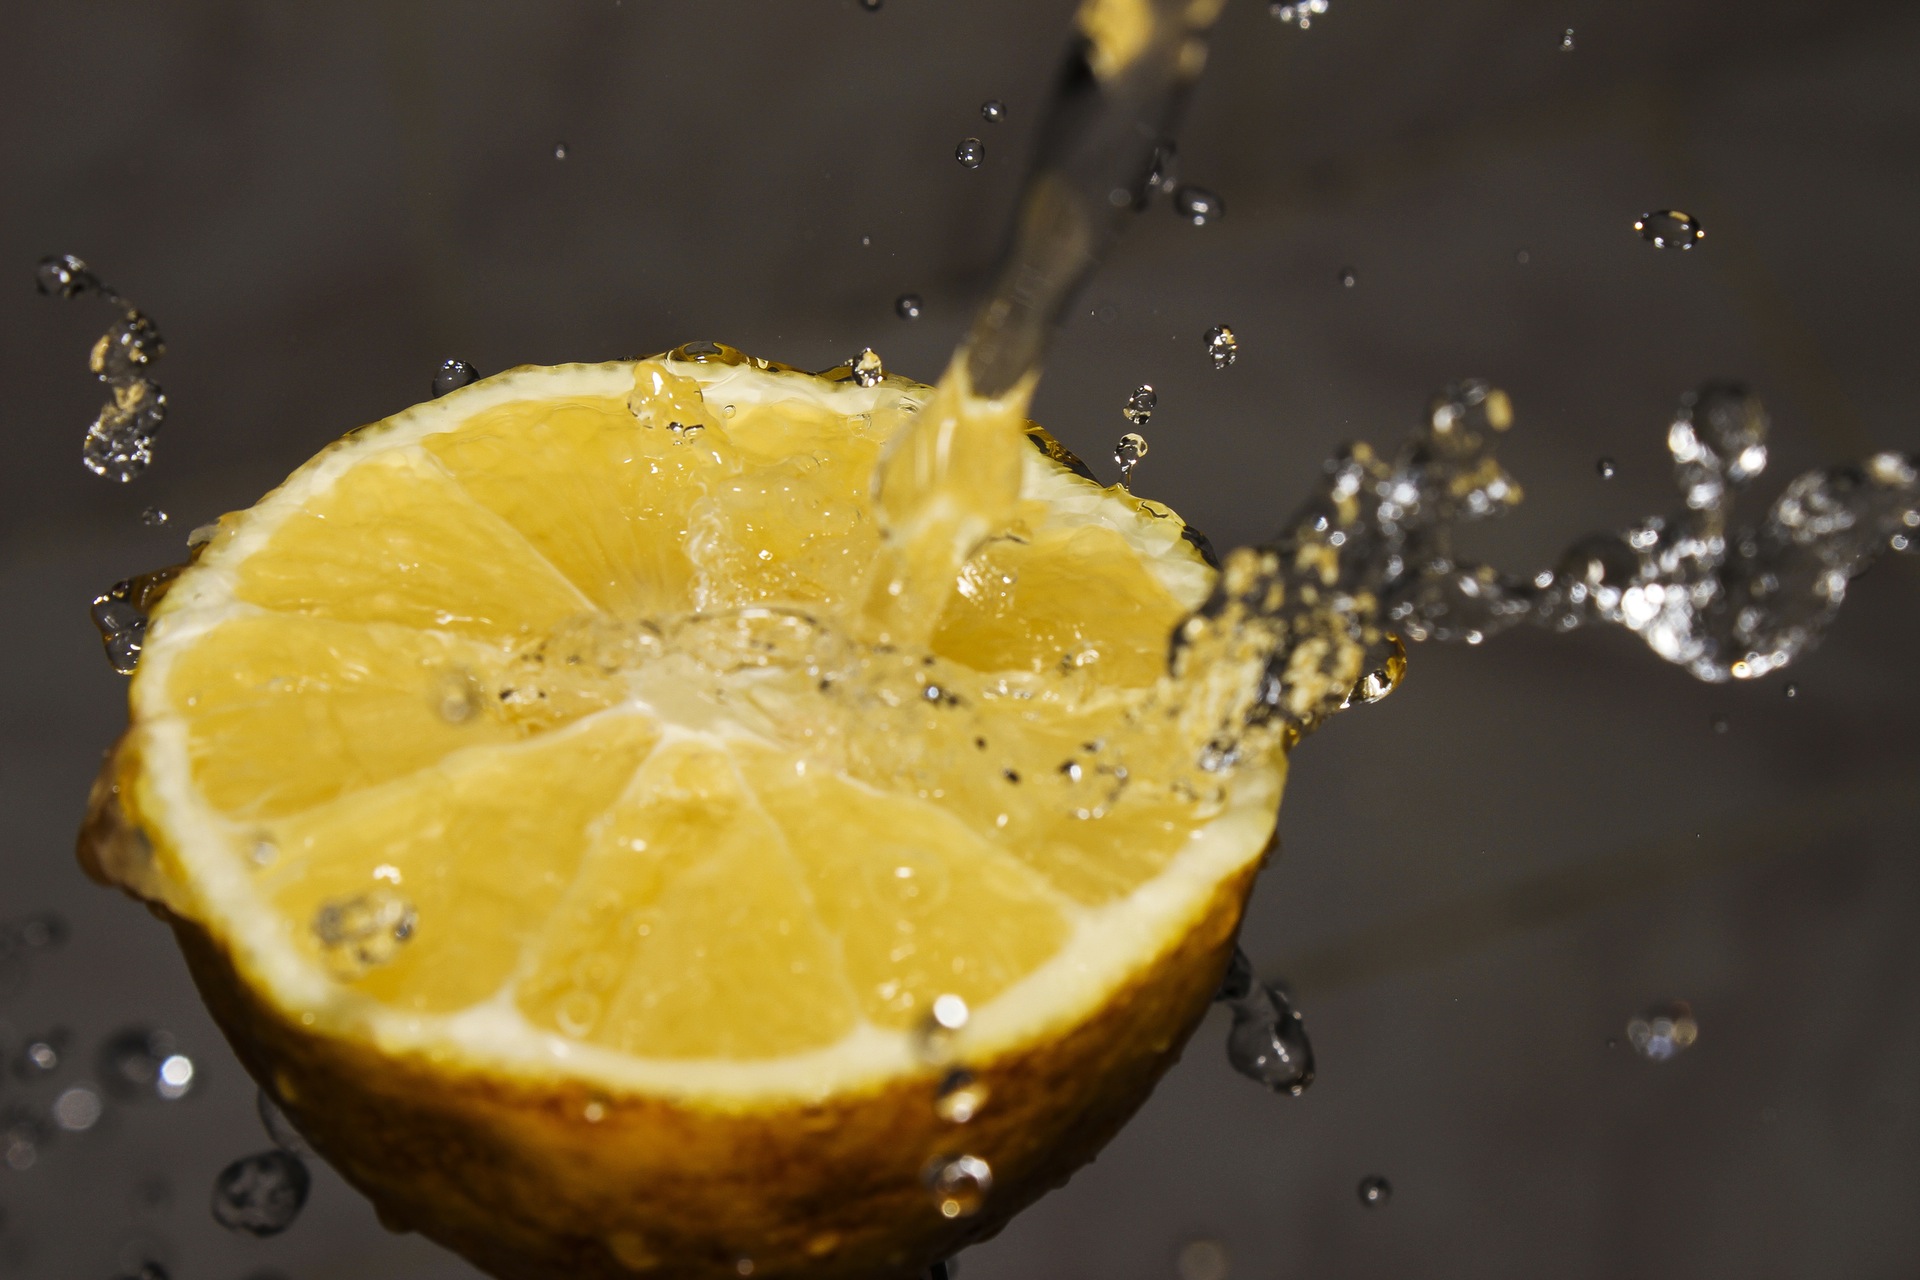 #Lemonade: A Lesson in Guerrilla Marketing